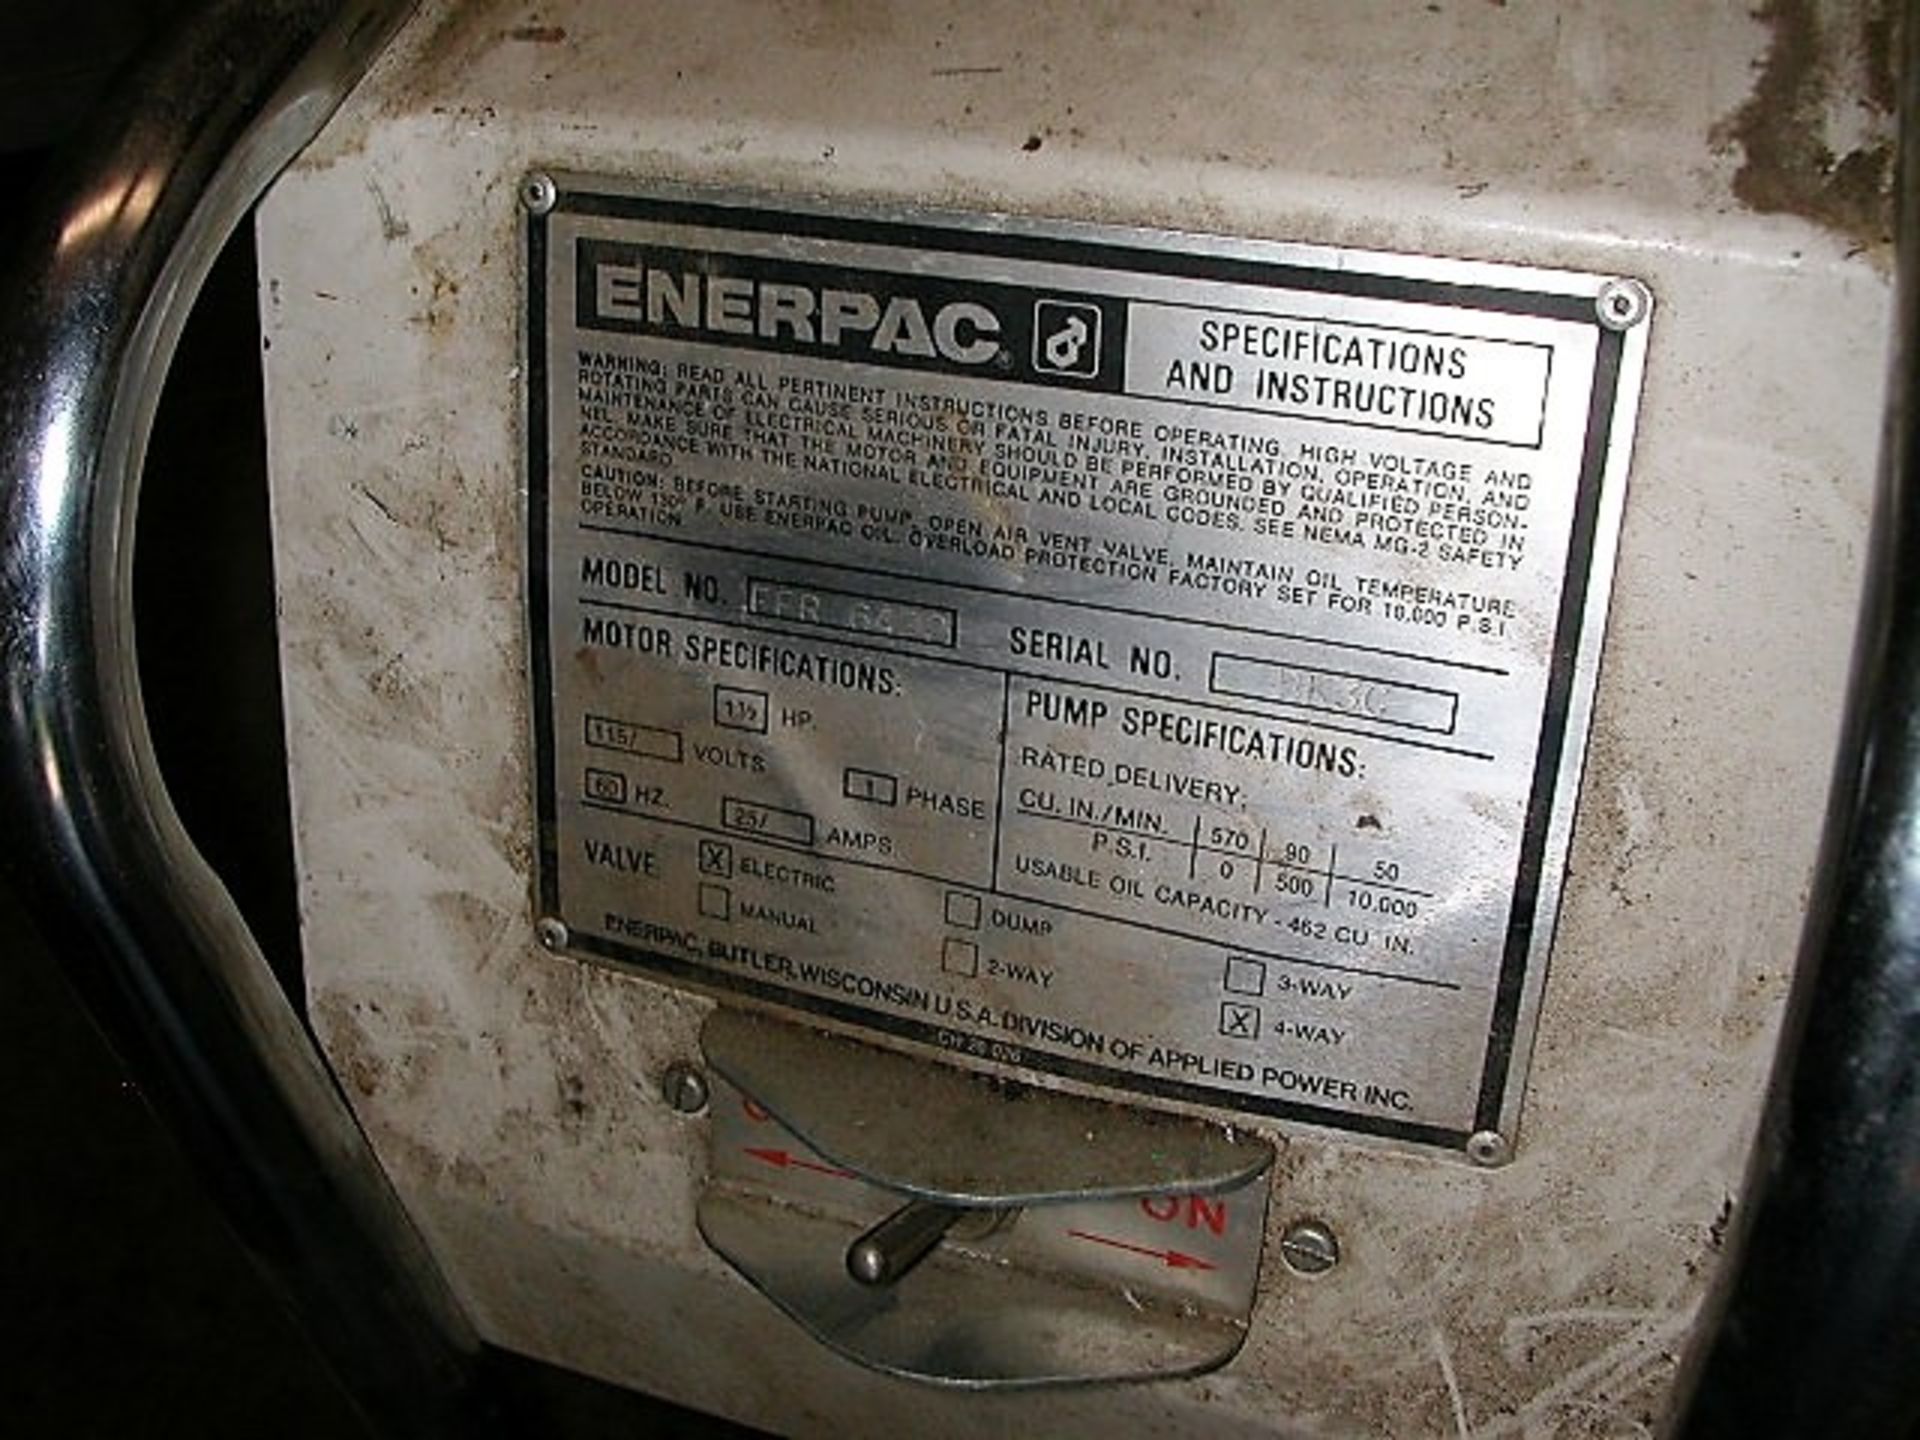 Enerpac EEGOR - Multi-Purpose Hydraulic Bender & EnerPac Pump in Toolguard CM-16 Job Box - Image 5 of 6